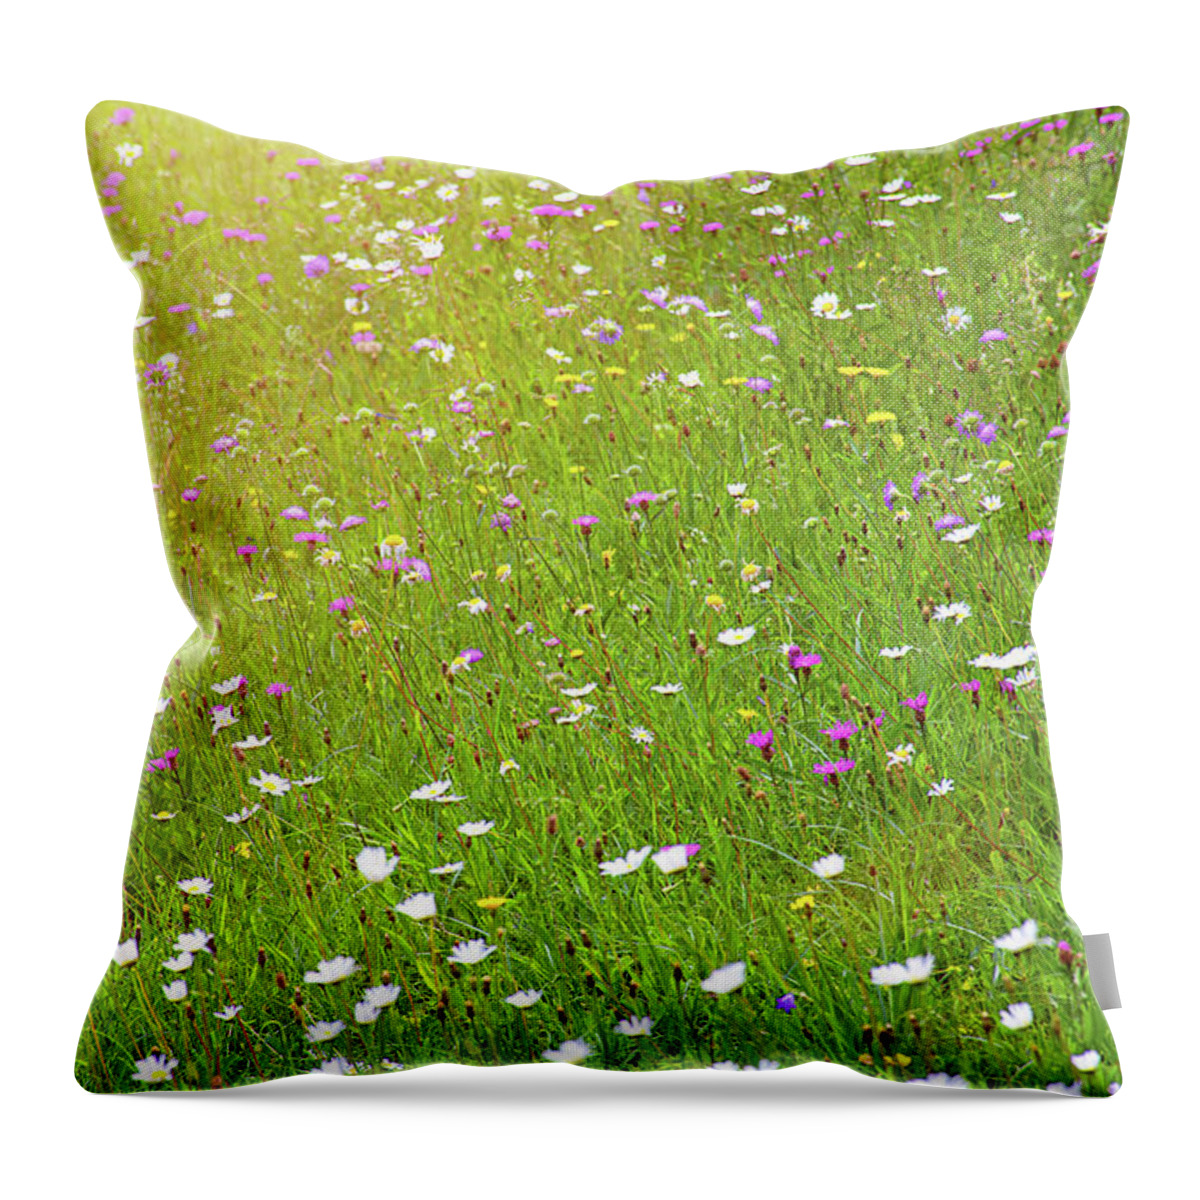 Idyllic Throw Pillow featuring the photograph Flower meadow in sunlight by Bernhard Schaffer